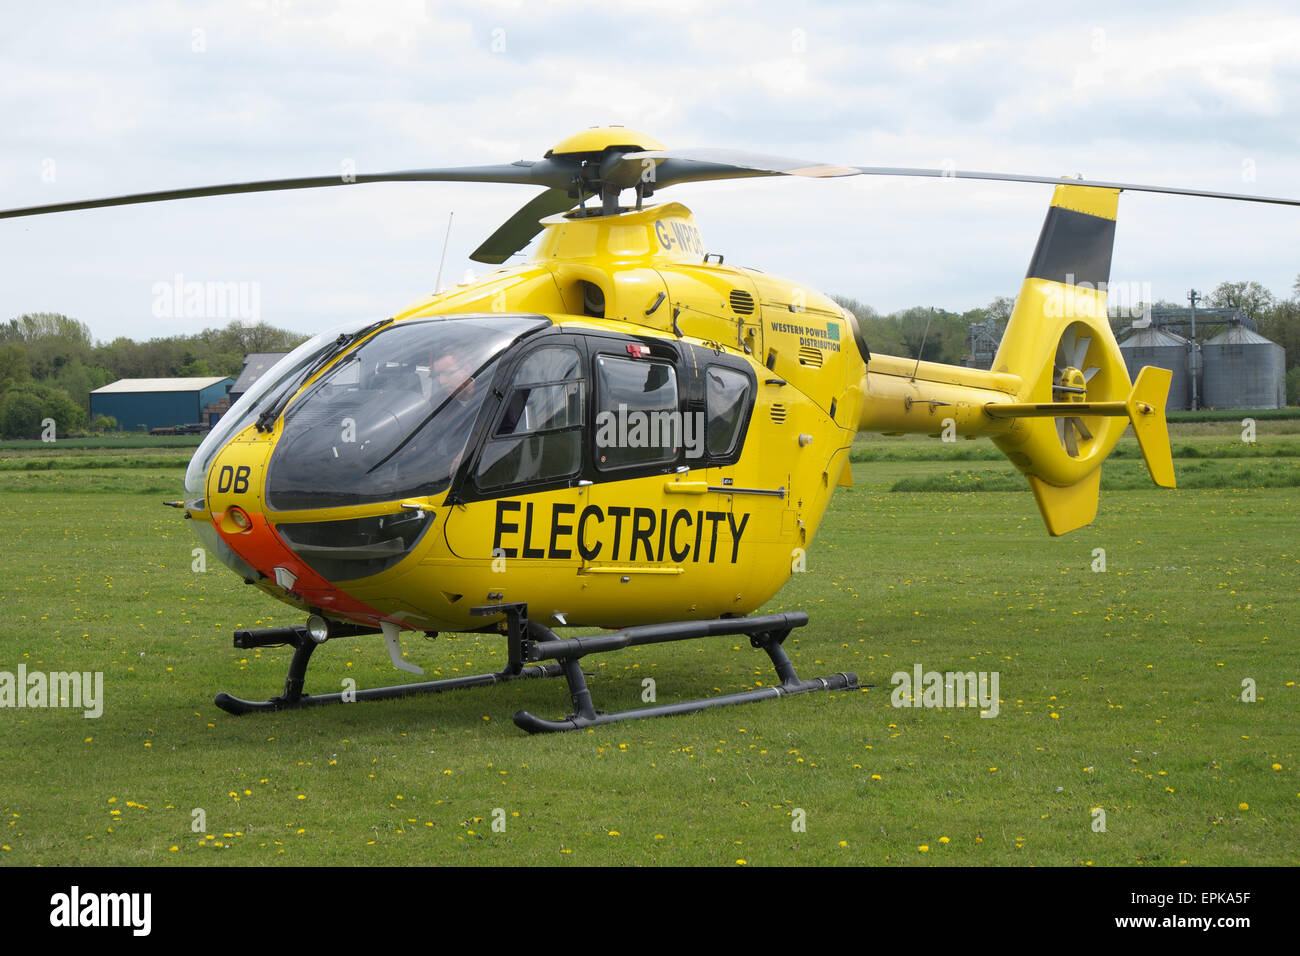 WPD Western Power Distribution hélicoptère EC 135 utilisé pour vérifier les fils d'alimentation de l'électricité lignes et pylônes électriques au Royaume-Uni Banque D'Images